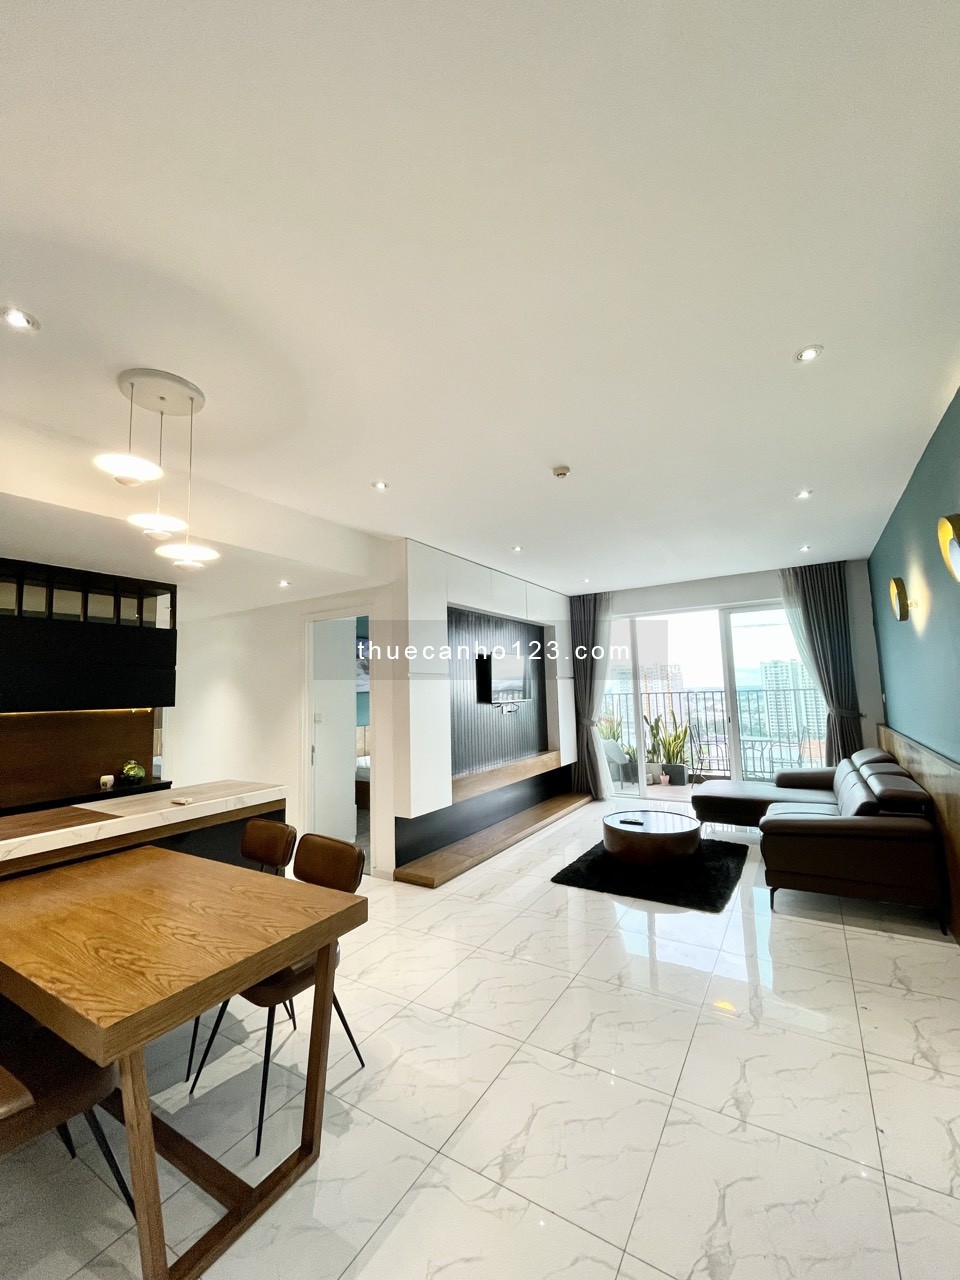 Chuyên cho thuê căn hộ đẹp giá tốt tại Q2, Vista verde, nhà như hình